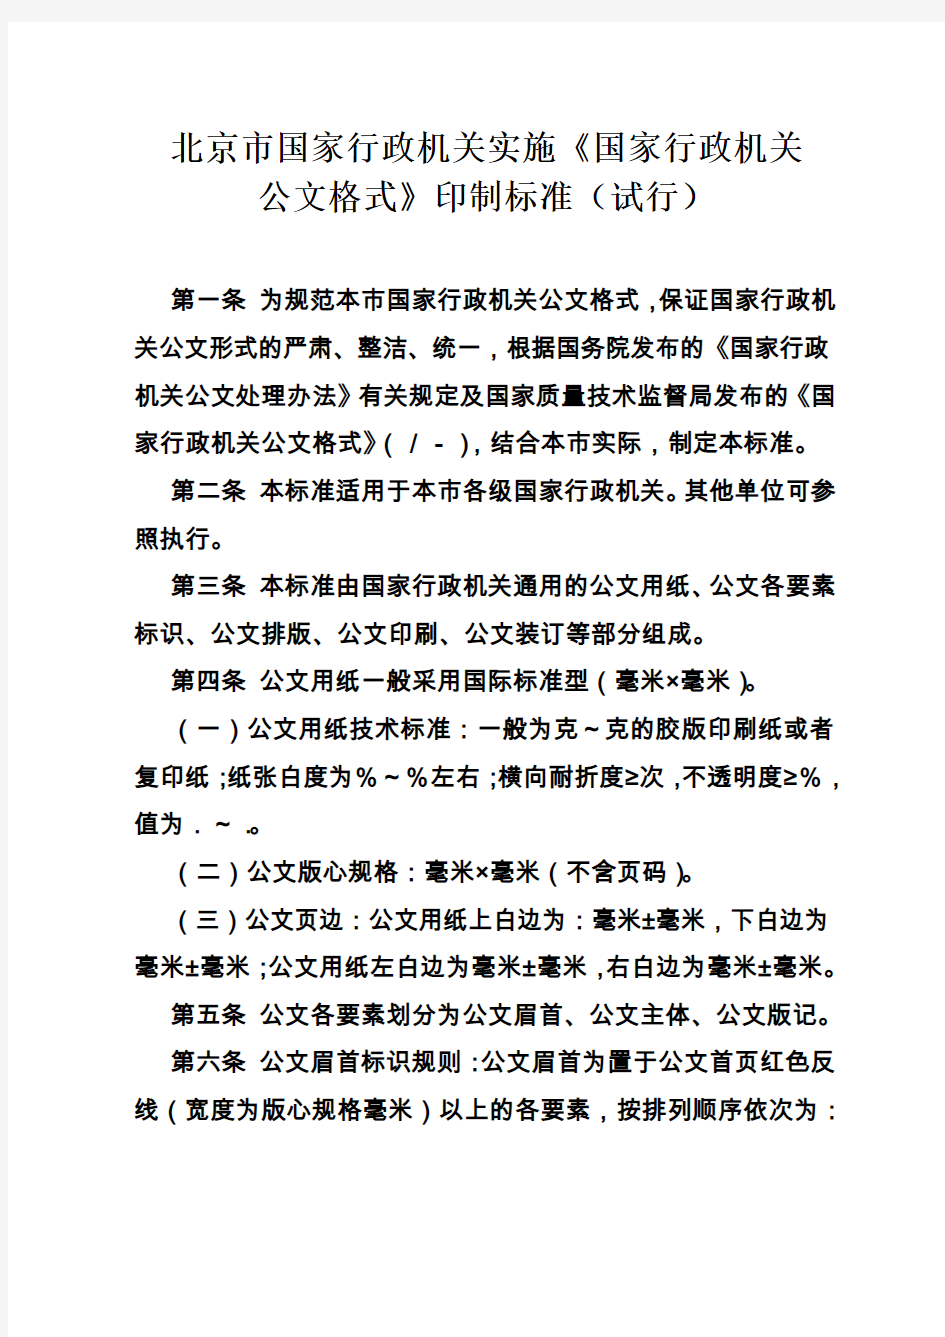 北京市国家行政机关实施《国家行政机关公文格式》印制标准(试行)